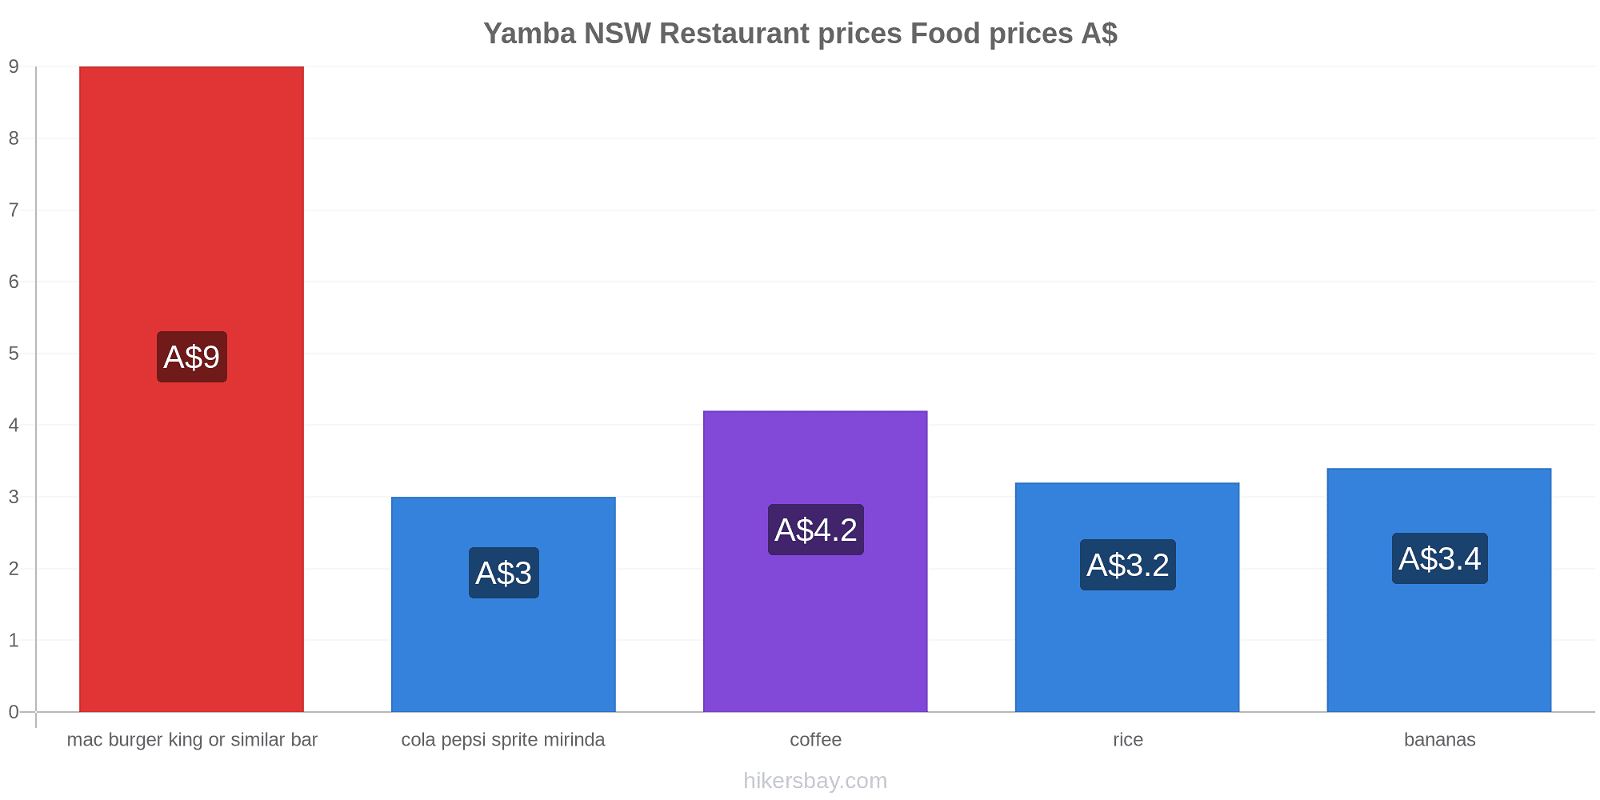 Yamba NSW price changes hikersbay.com